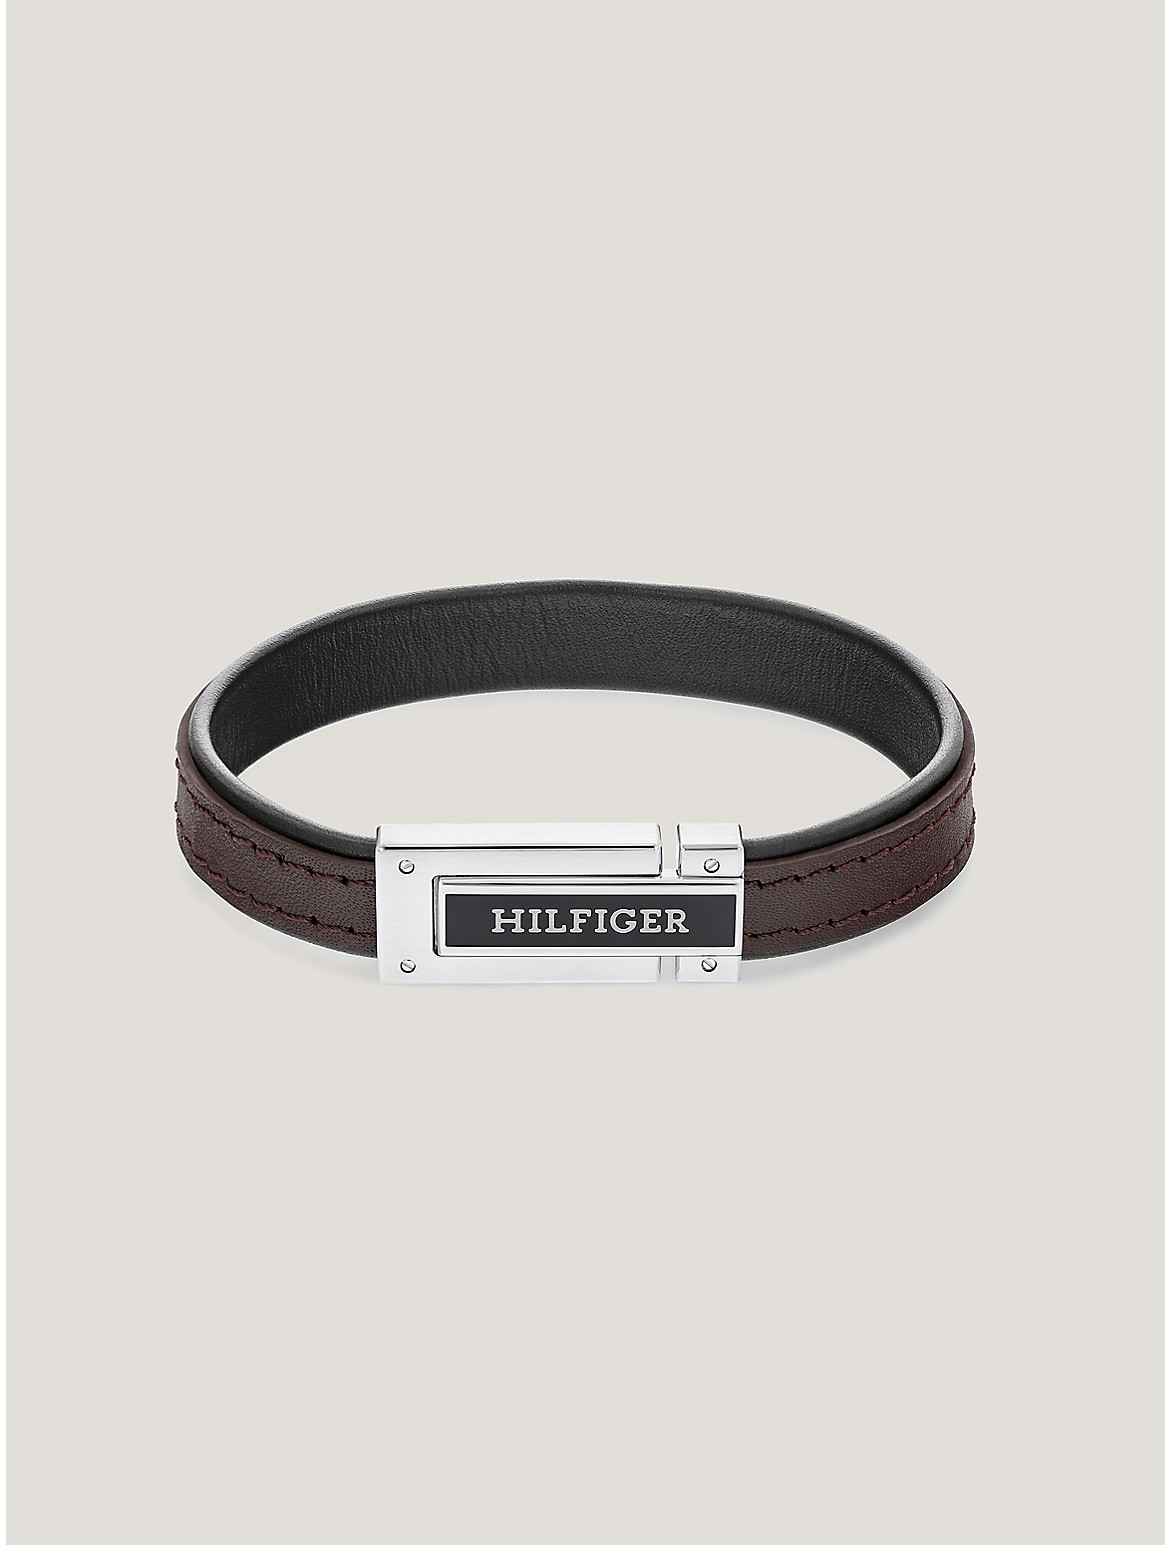 Tommy Hilfiger Men's Hilfiger Leather Bracelet